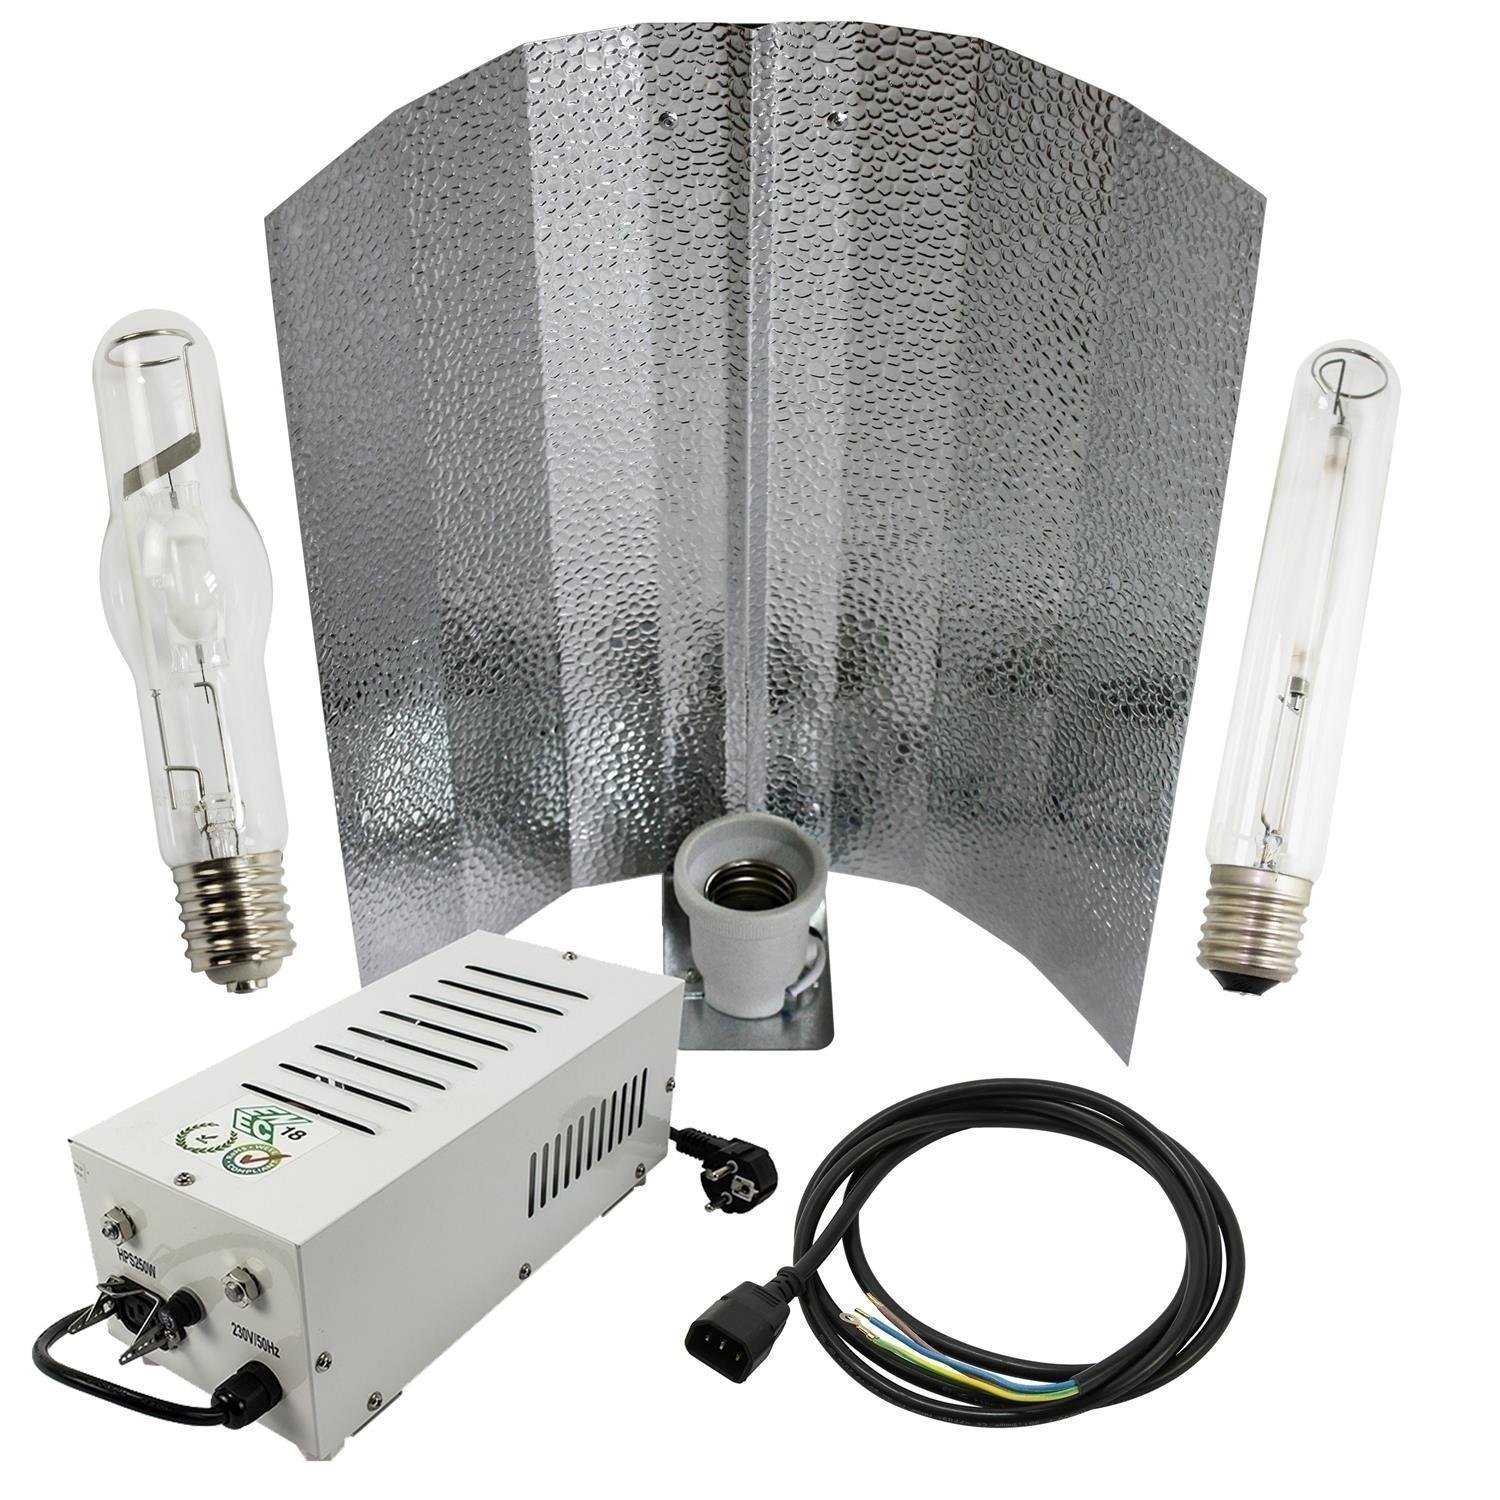 Horti Pro Gear Bausatz 400W Wuchs und Blüte unter Beleuchtung > Natriumdampflampen > Lampensets